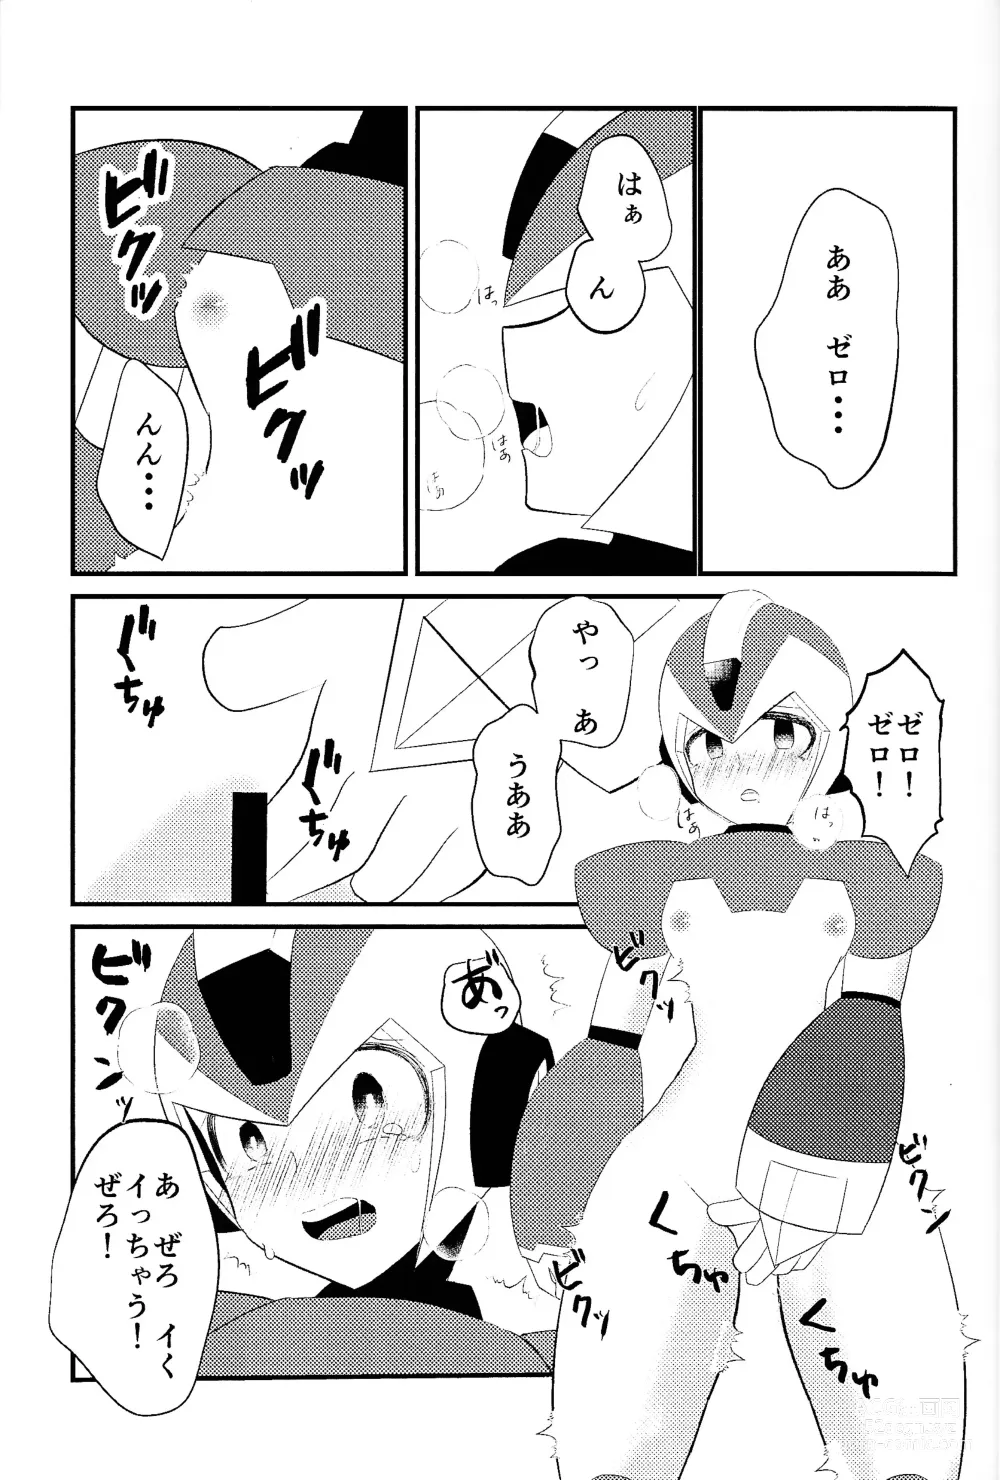 Page 3 of doujinshi Ore wa kimi no te de Hna koto o shite shimatta!!!